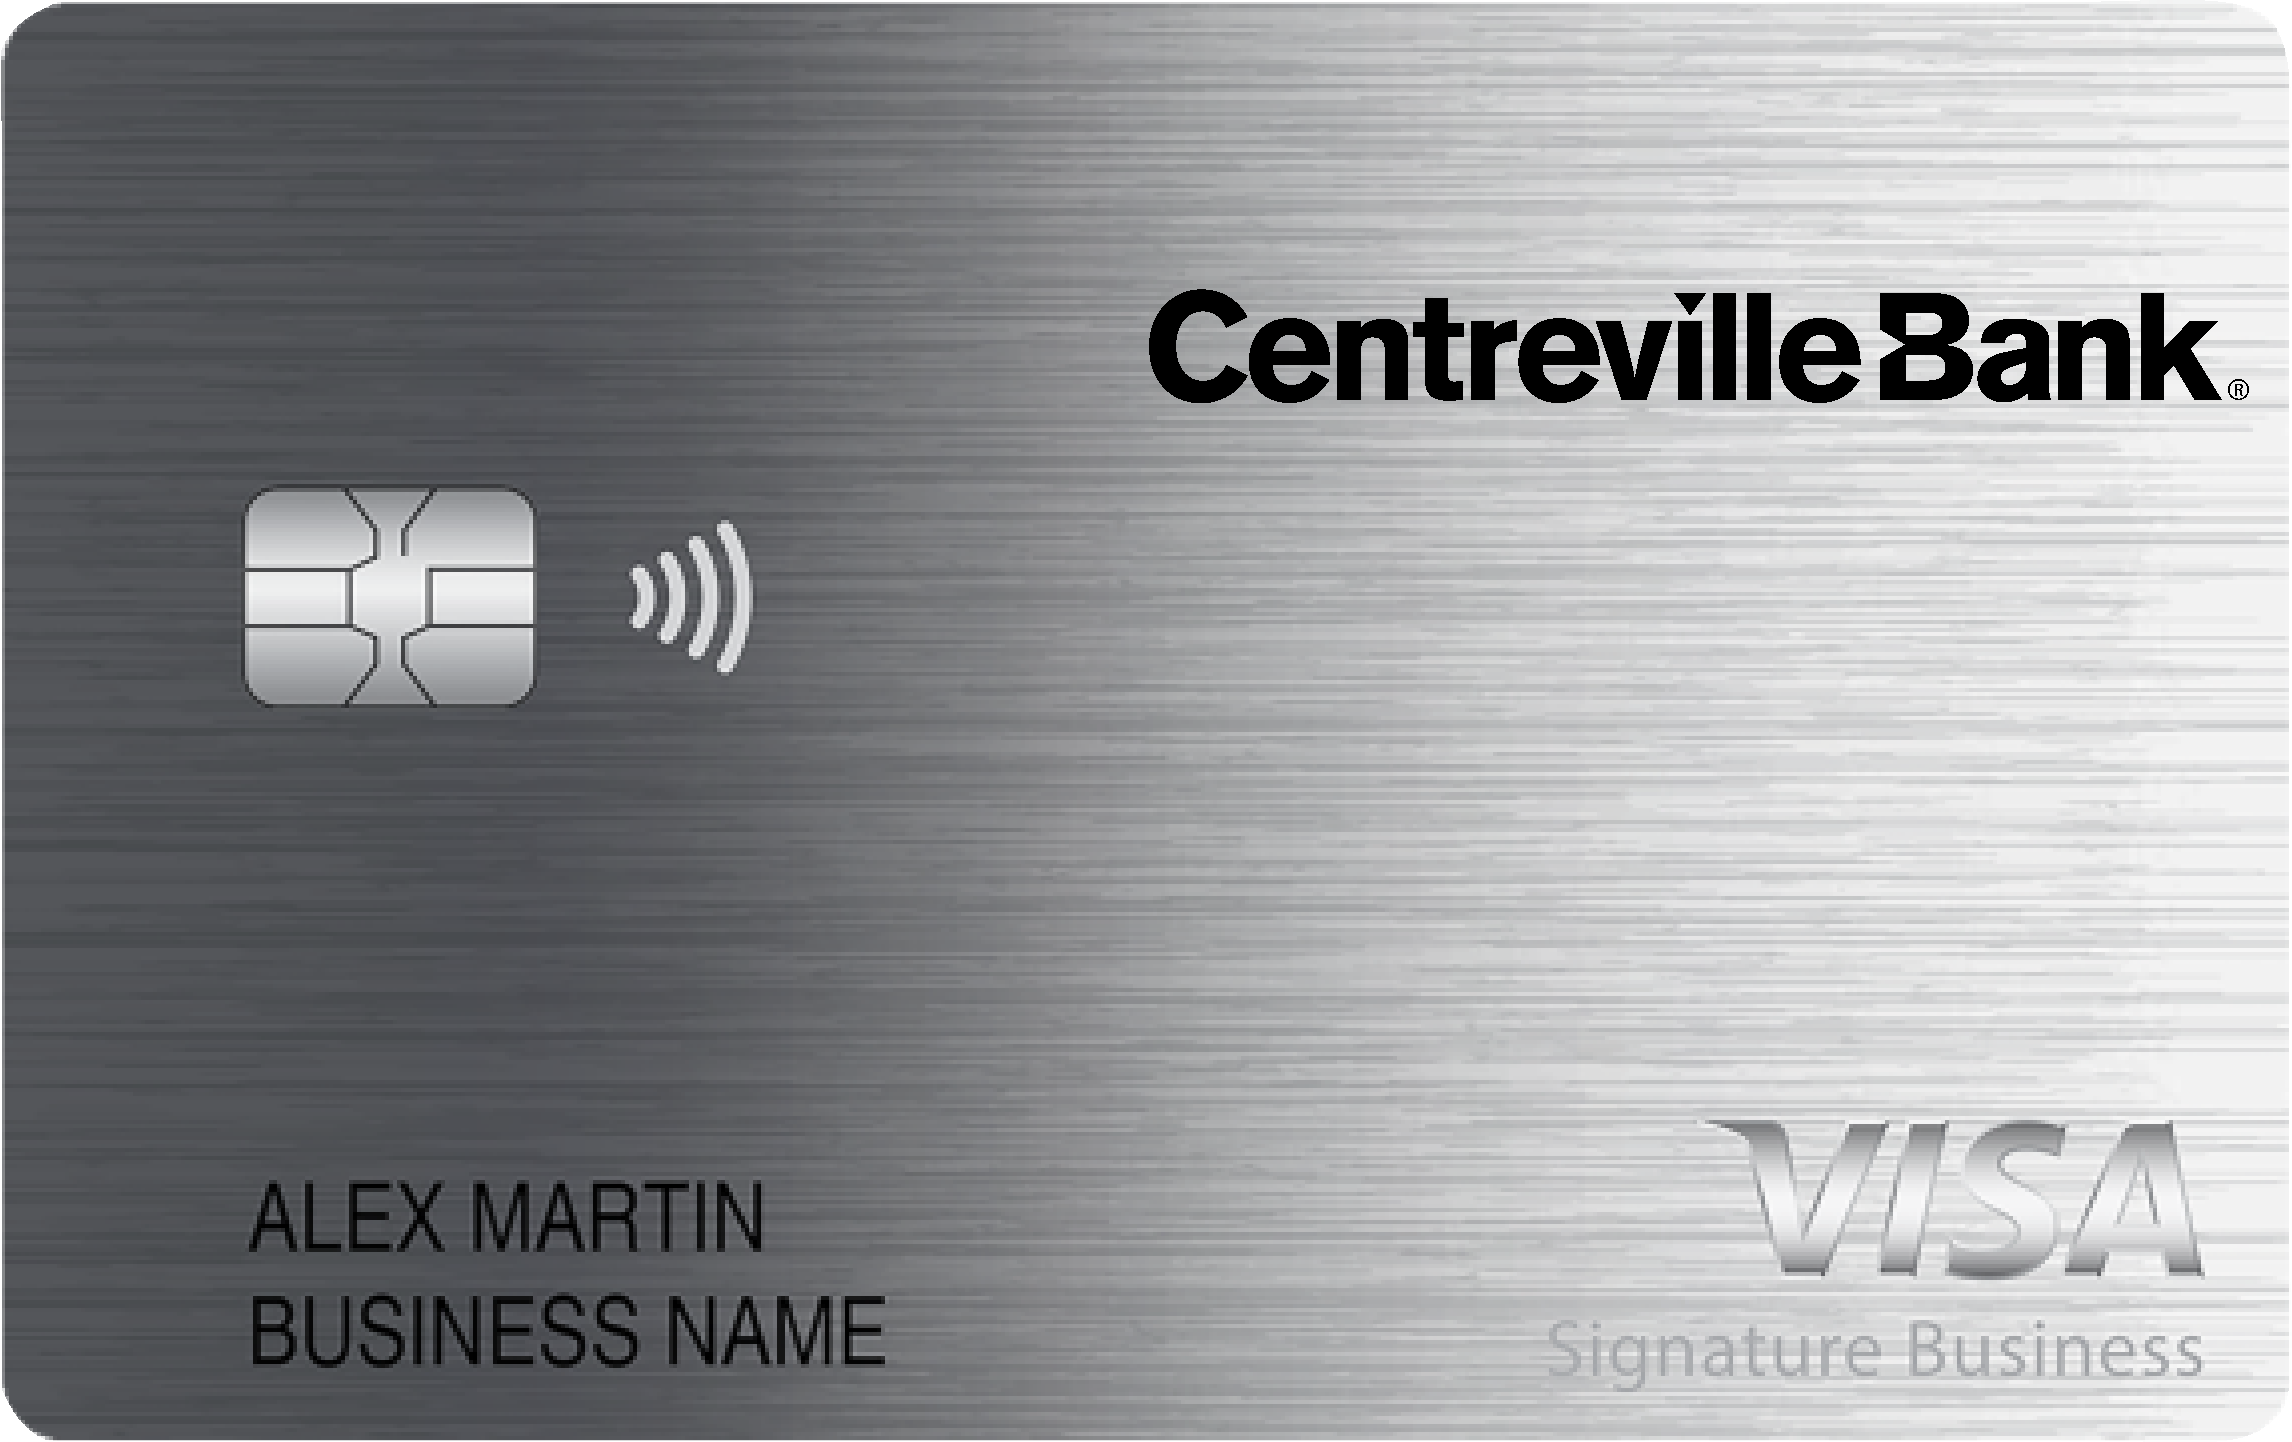 Centreville Bank Smart Business Rewards Card